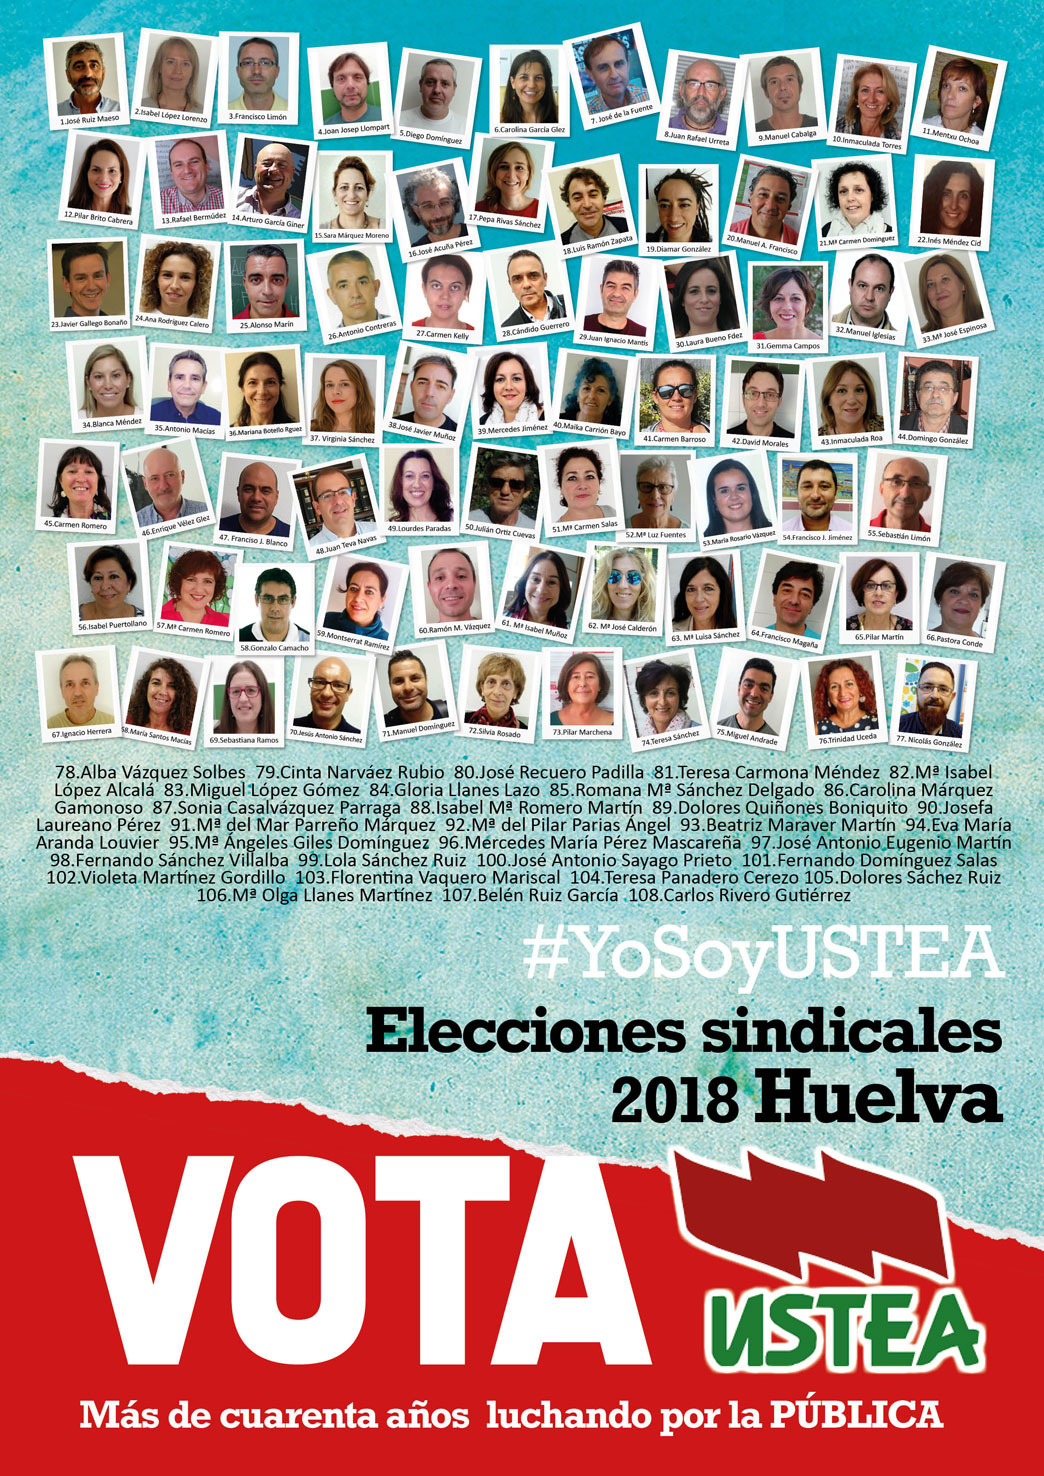 Elecciones sindicales2018 a quién votar Ustea Huelva